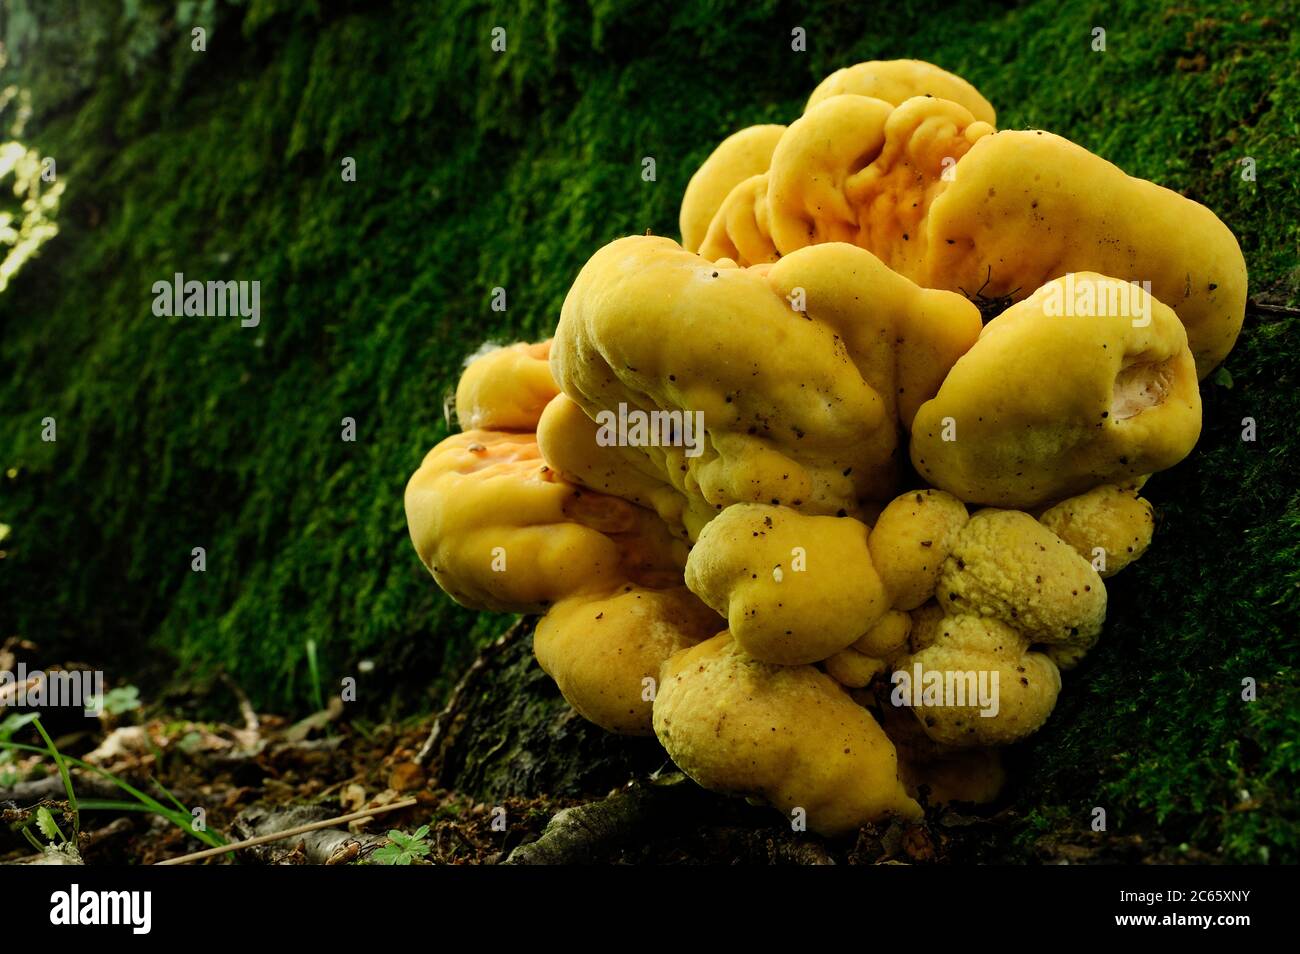 Porcini de azufre (Laetiporus sulfureus) cuerpo de fructificación en el tronco de un roble viejo Foto de stock